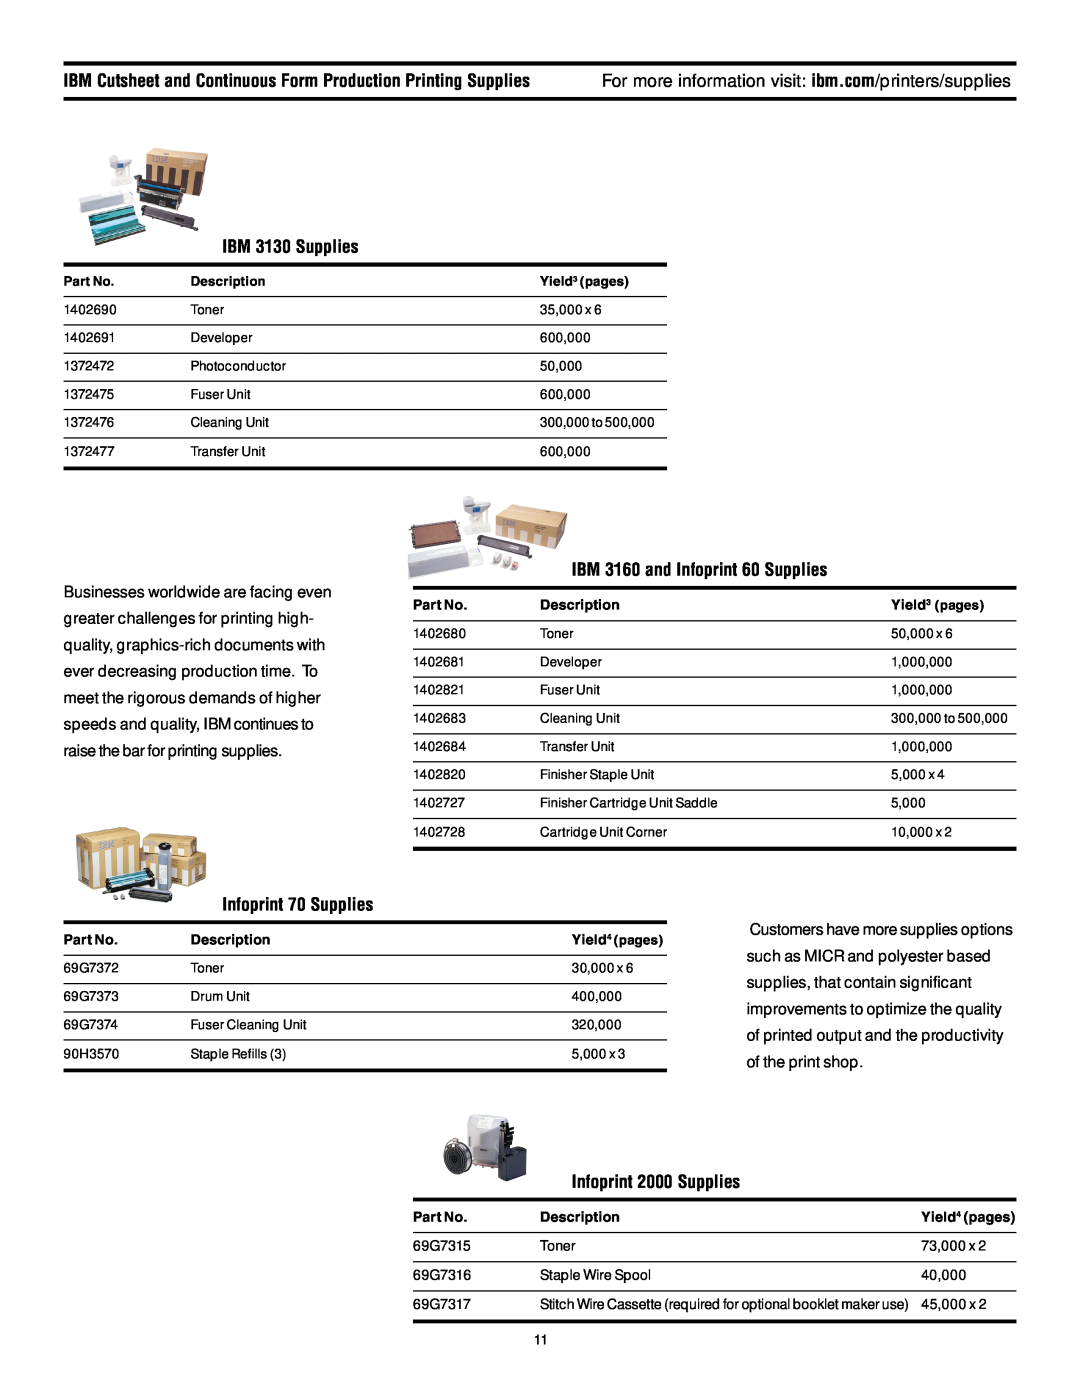 IBM 6400 manual IBM 3130 Supplies, IBM 3160 and Infoprint 60 Supplies, Infoprint 70 Supplies, Infoprint 2000 Supplies 